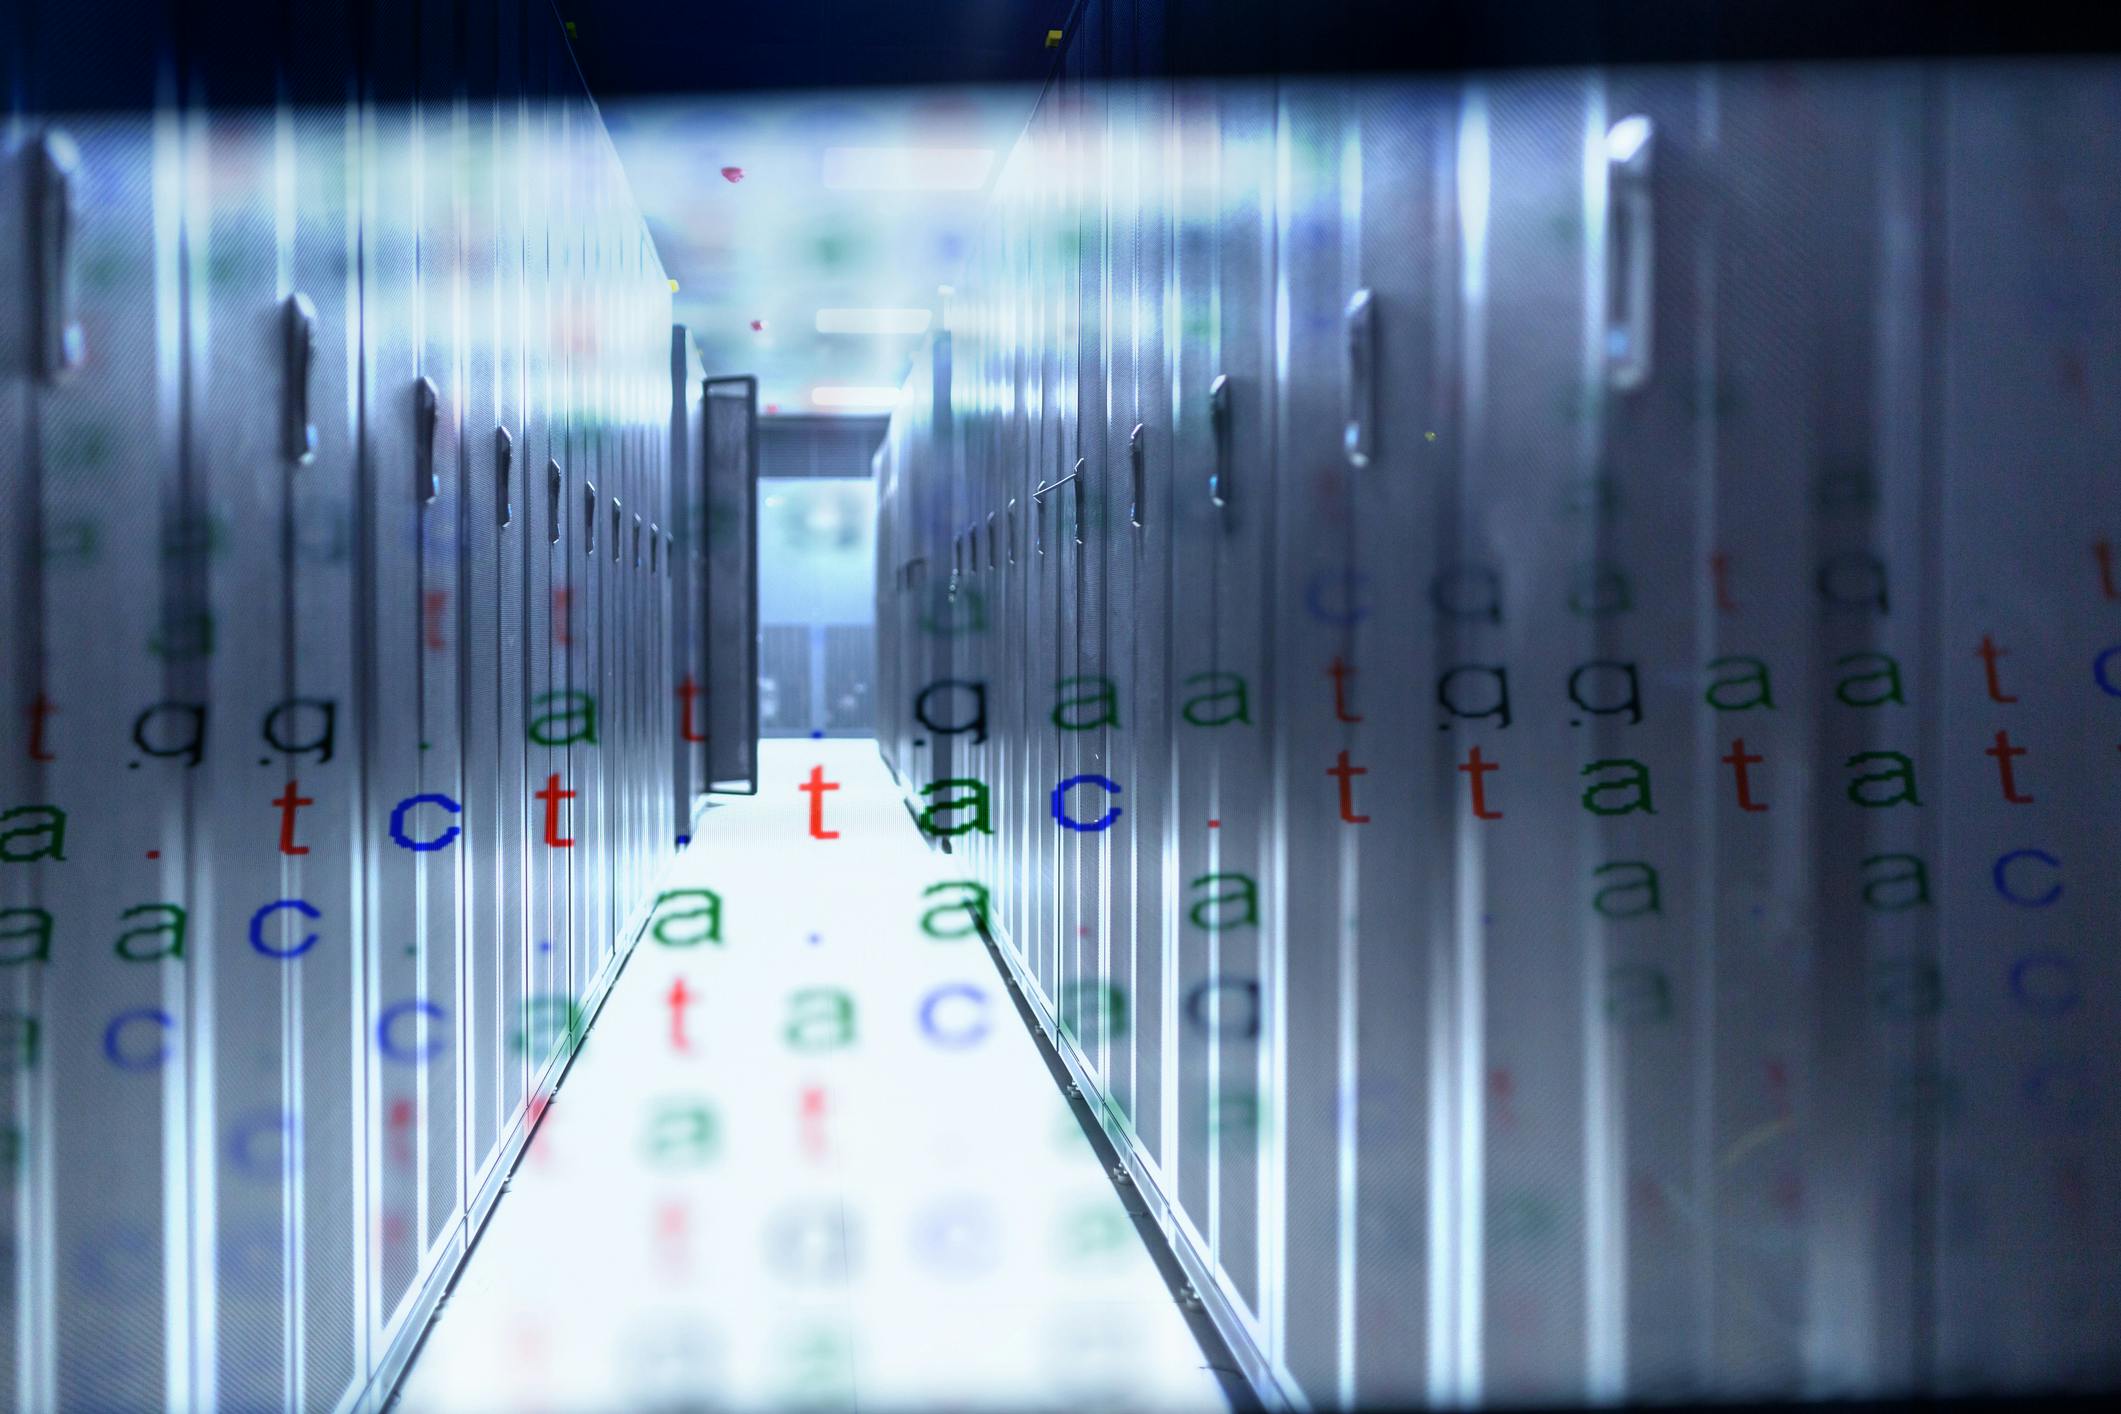 DNA storage